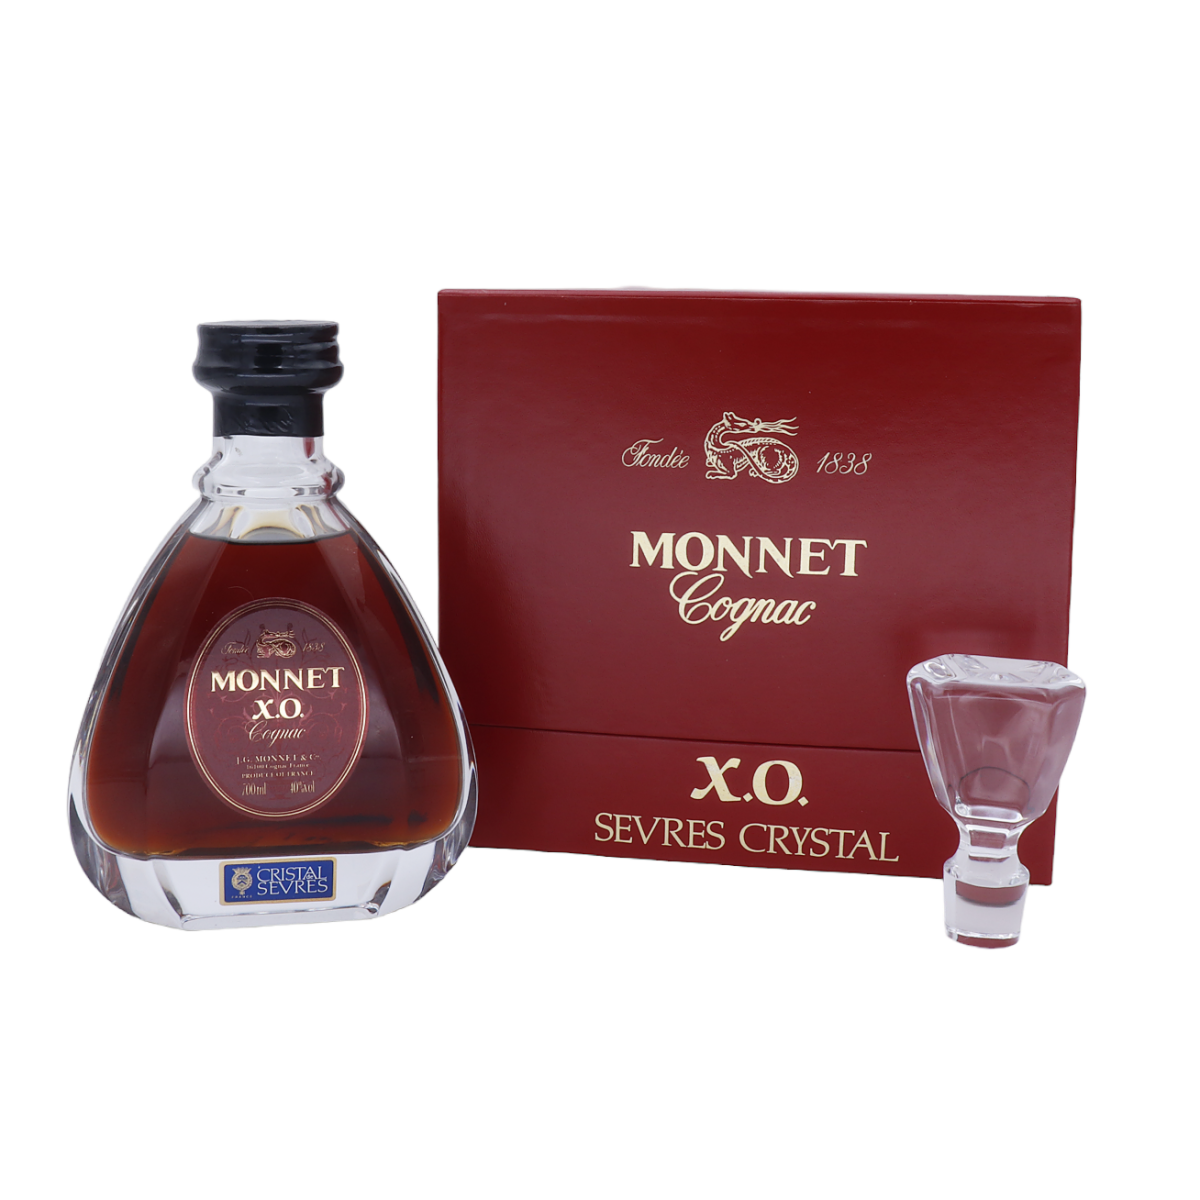 Monnet Cognac XO Cristal